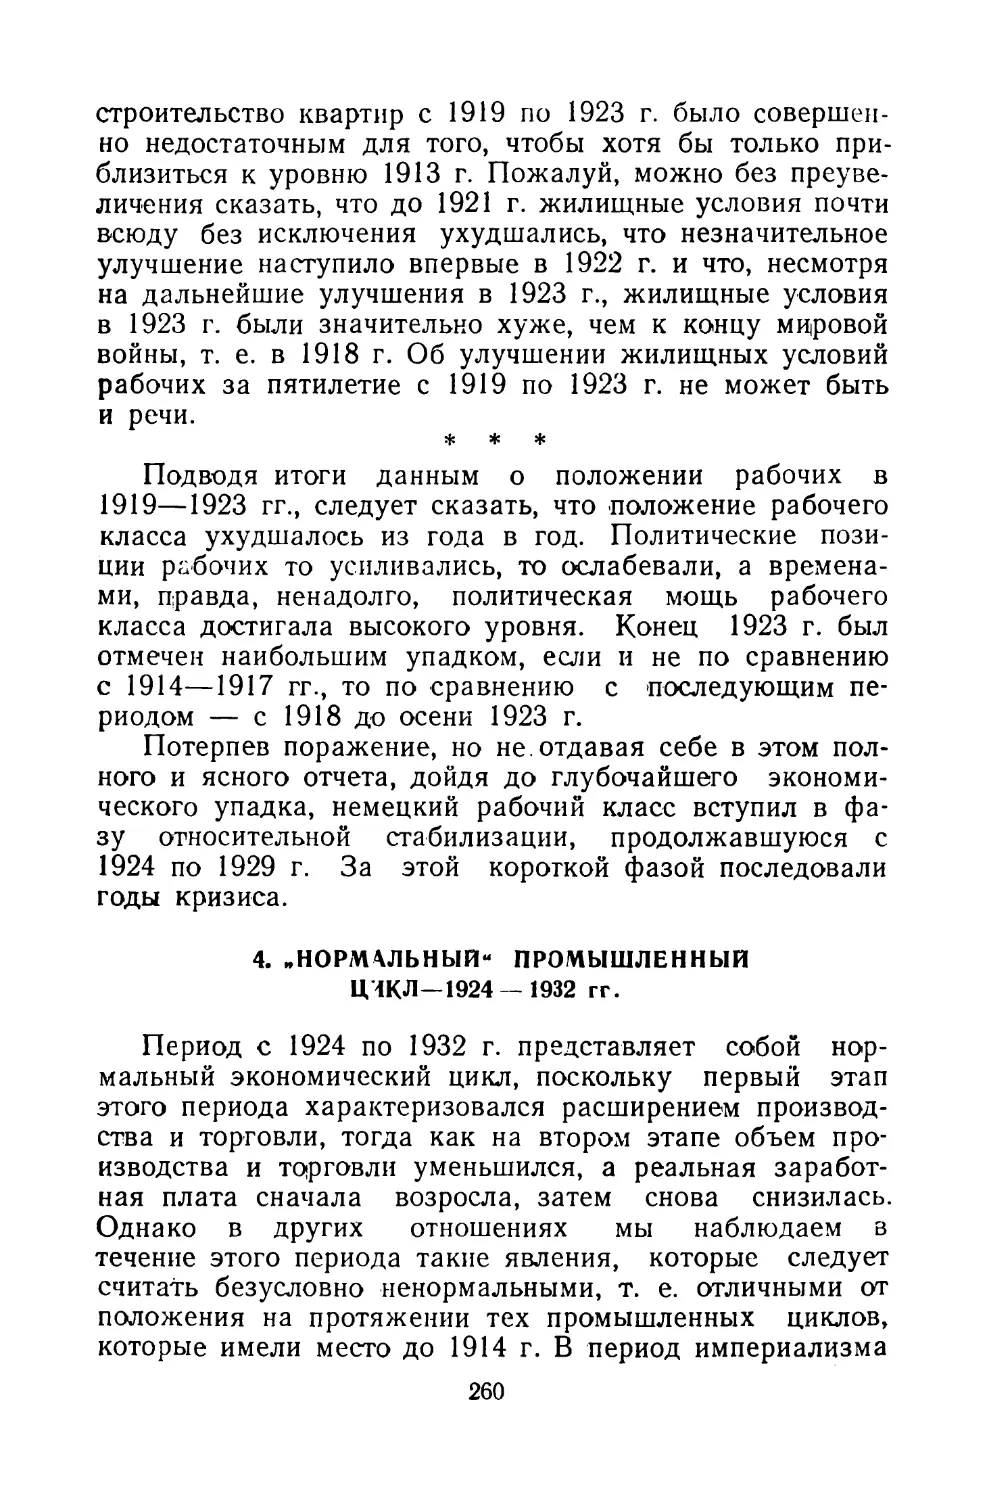 4. «НОРМАЛЬНЫЙ» ПРОМЫШЛЕННЫЙ ЦИКЛ — 1924-1932 гг.